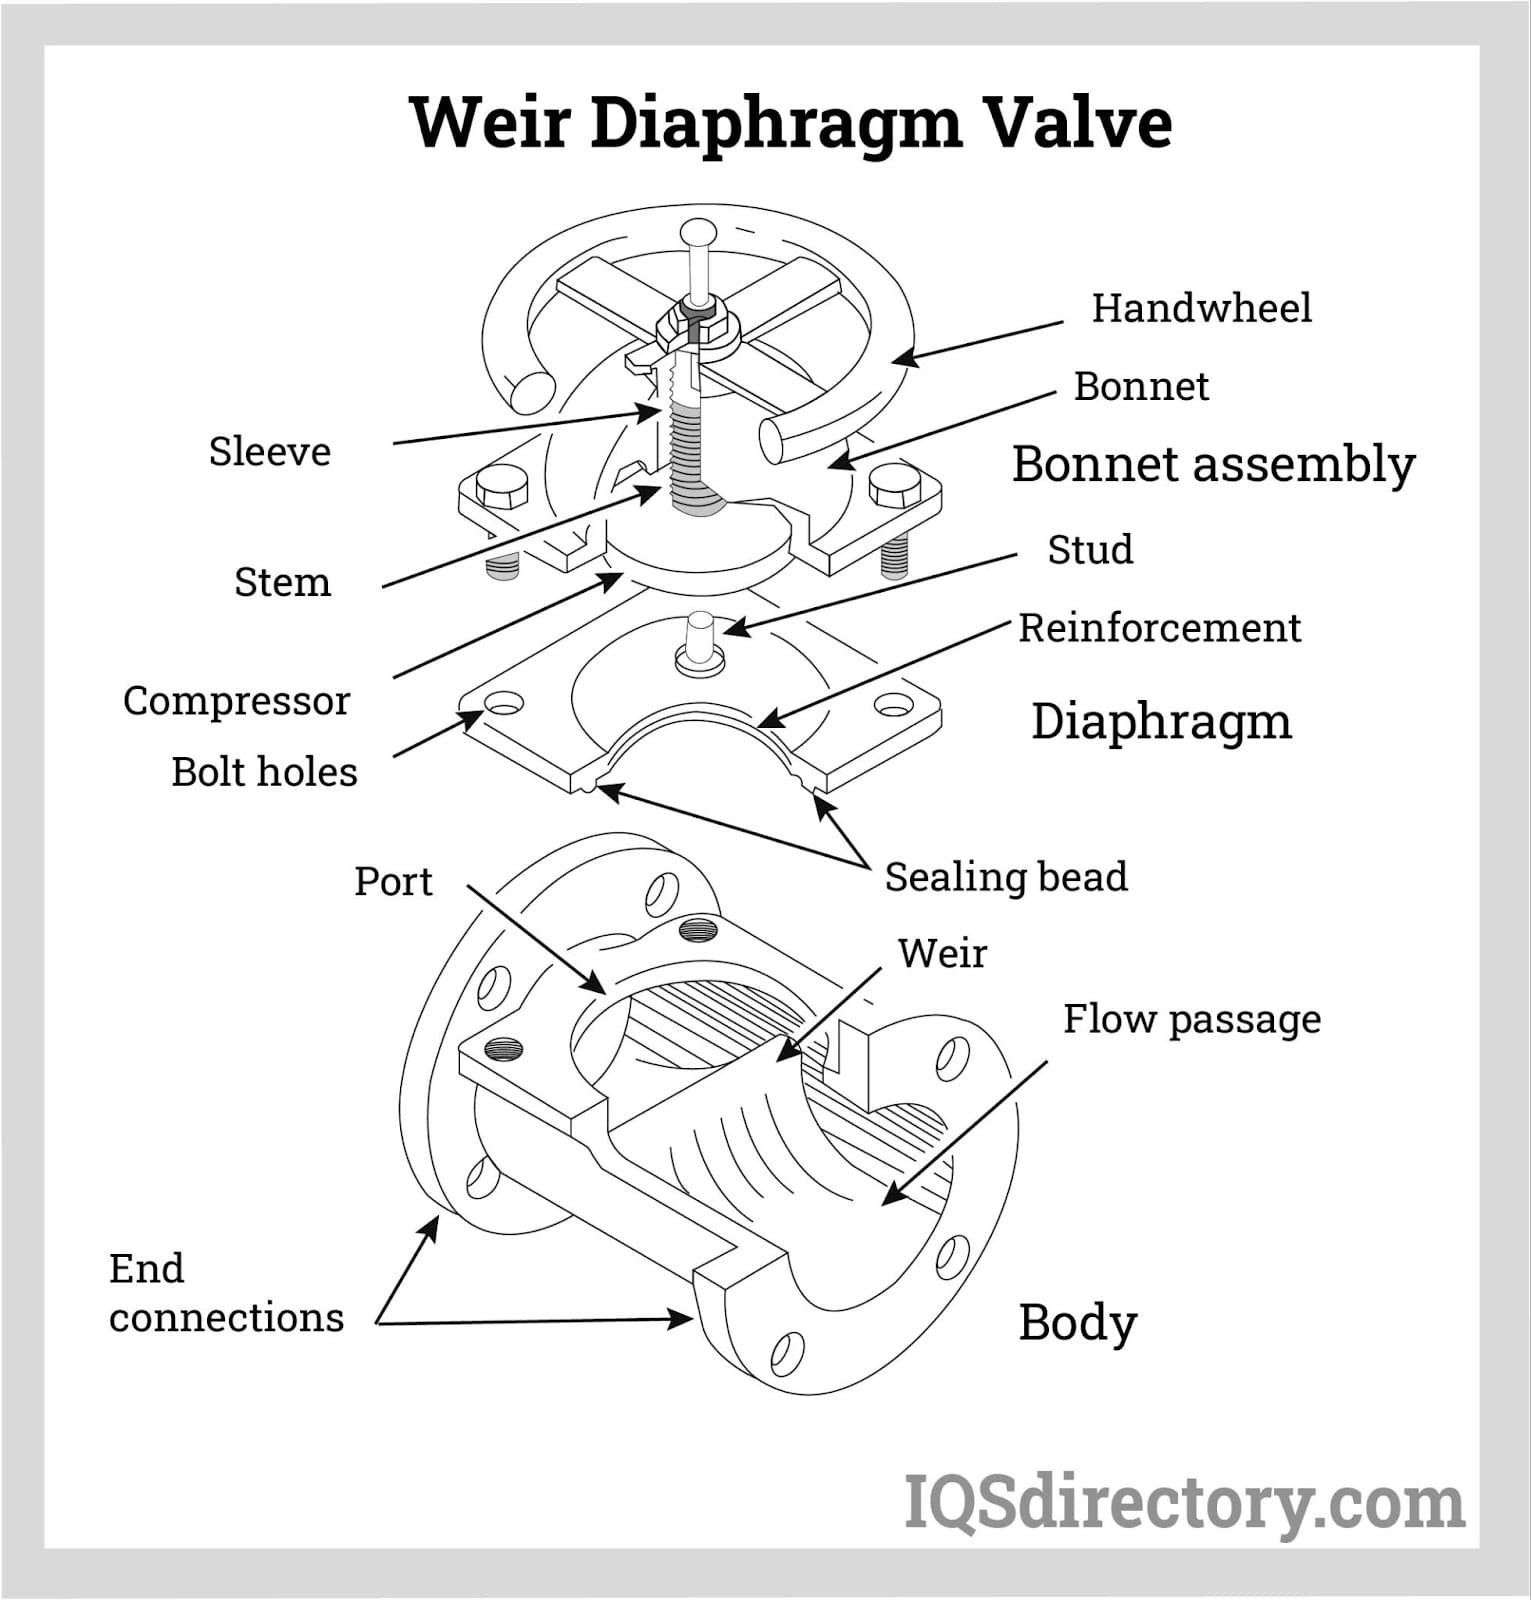 Weir Diaphragm Valve